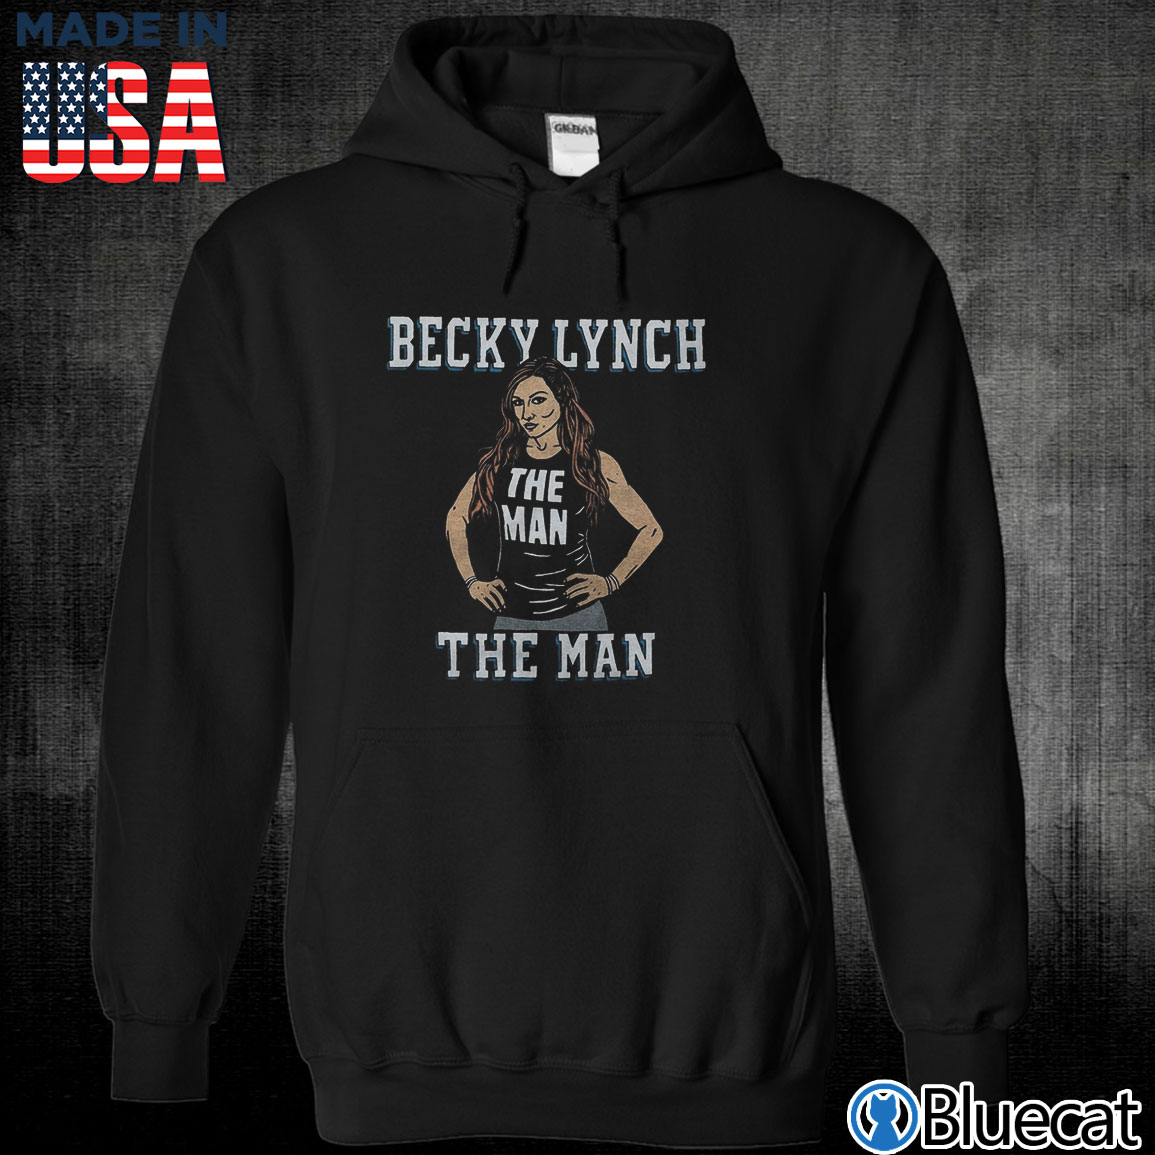 Thorshirts on X: Becky Lynch Fortnite The Man Shirt Buy Link:   Home:    / X